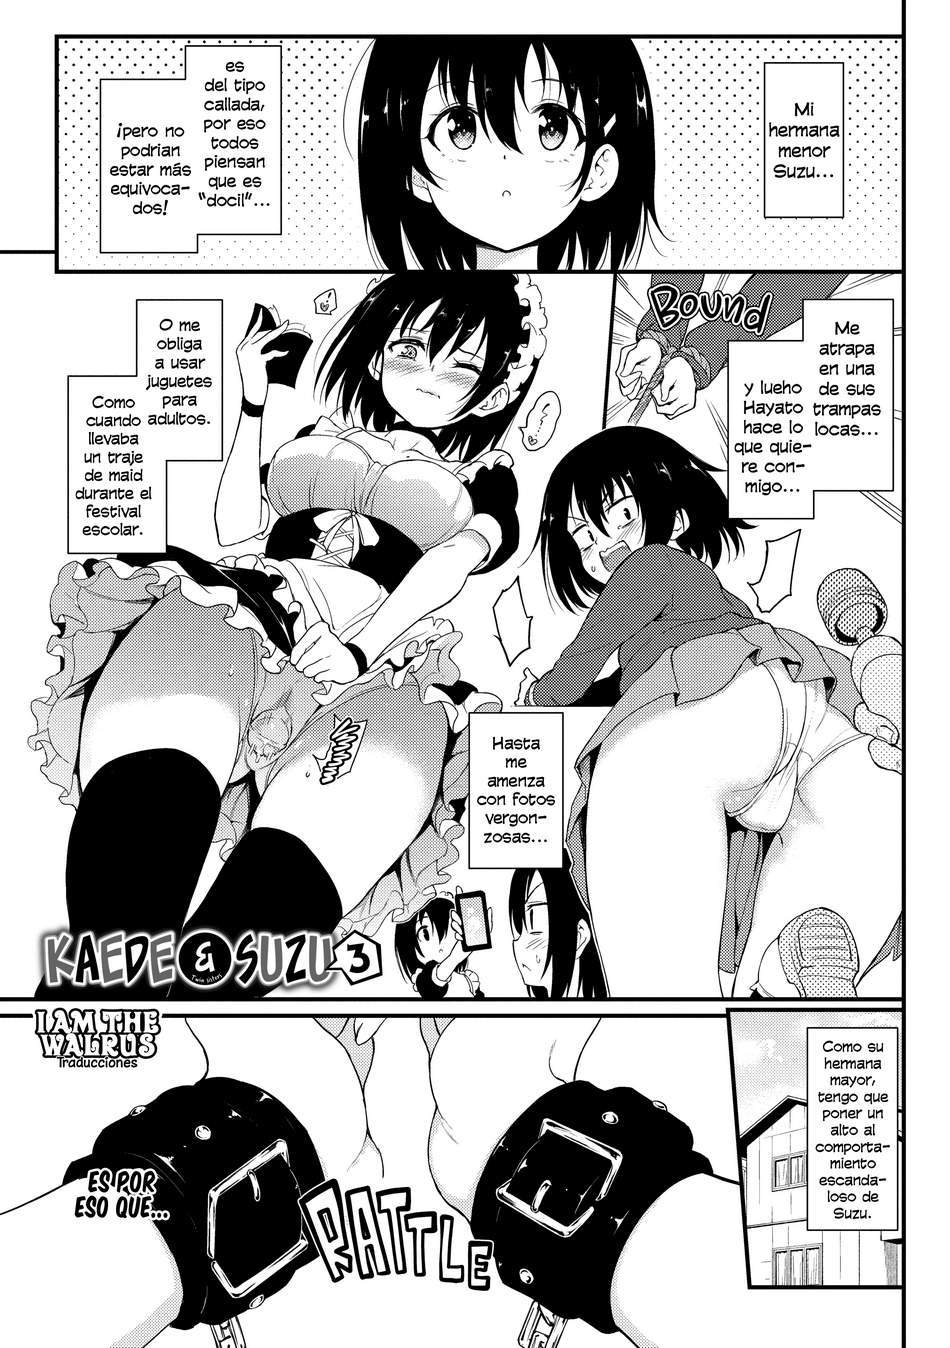 Kaede y Suzu #3 - Page #1